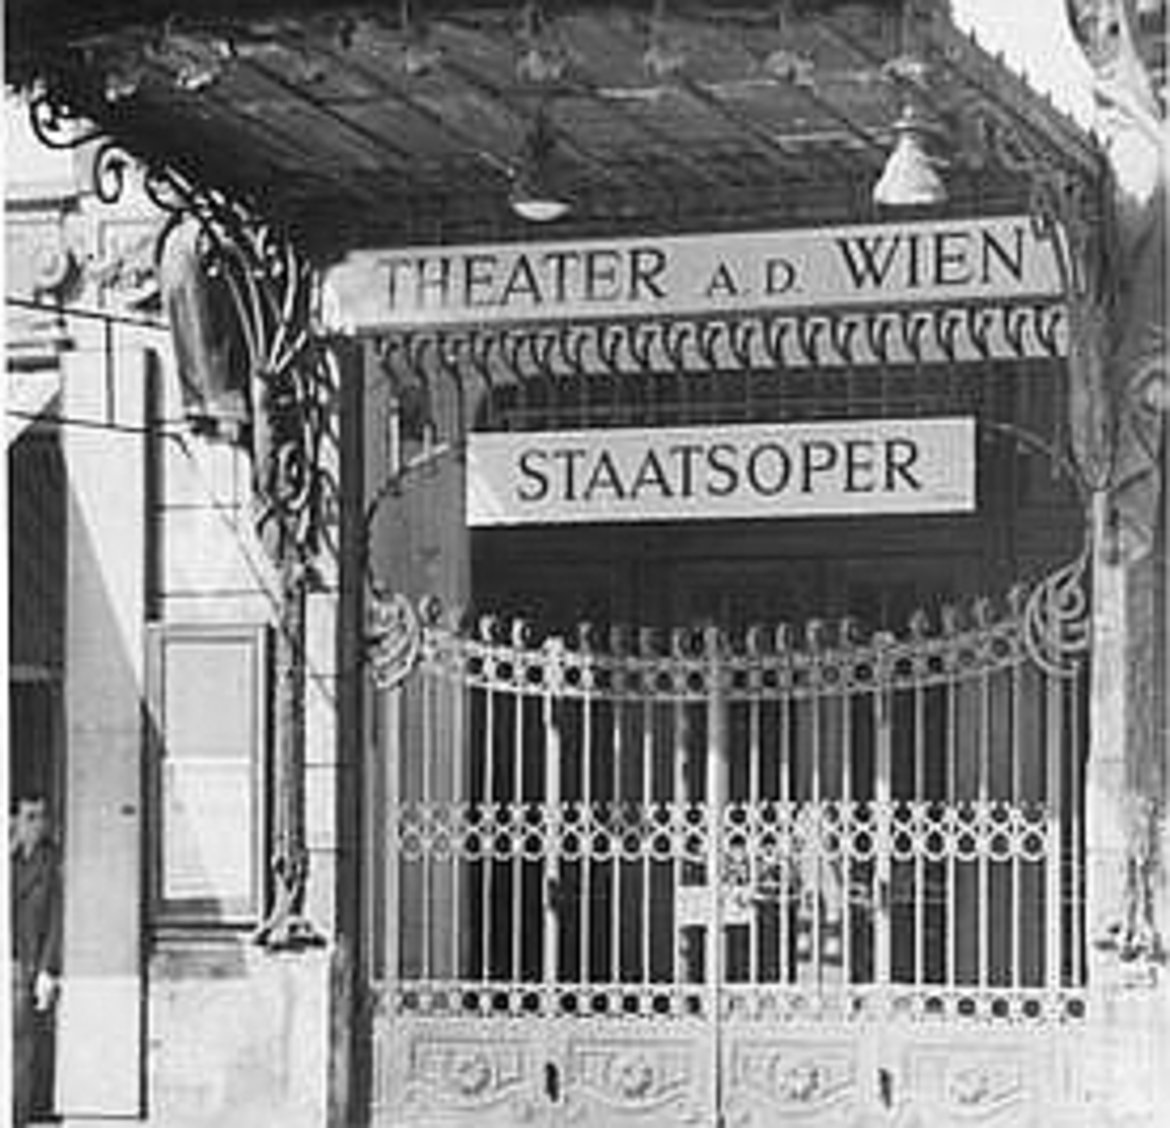 Das Eingangsgittertor des Theaters mit zwei Schildern: "Theater a. d. Wien" und "Staatsoper"